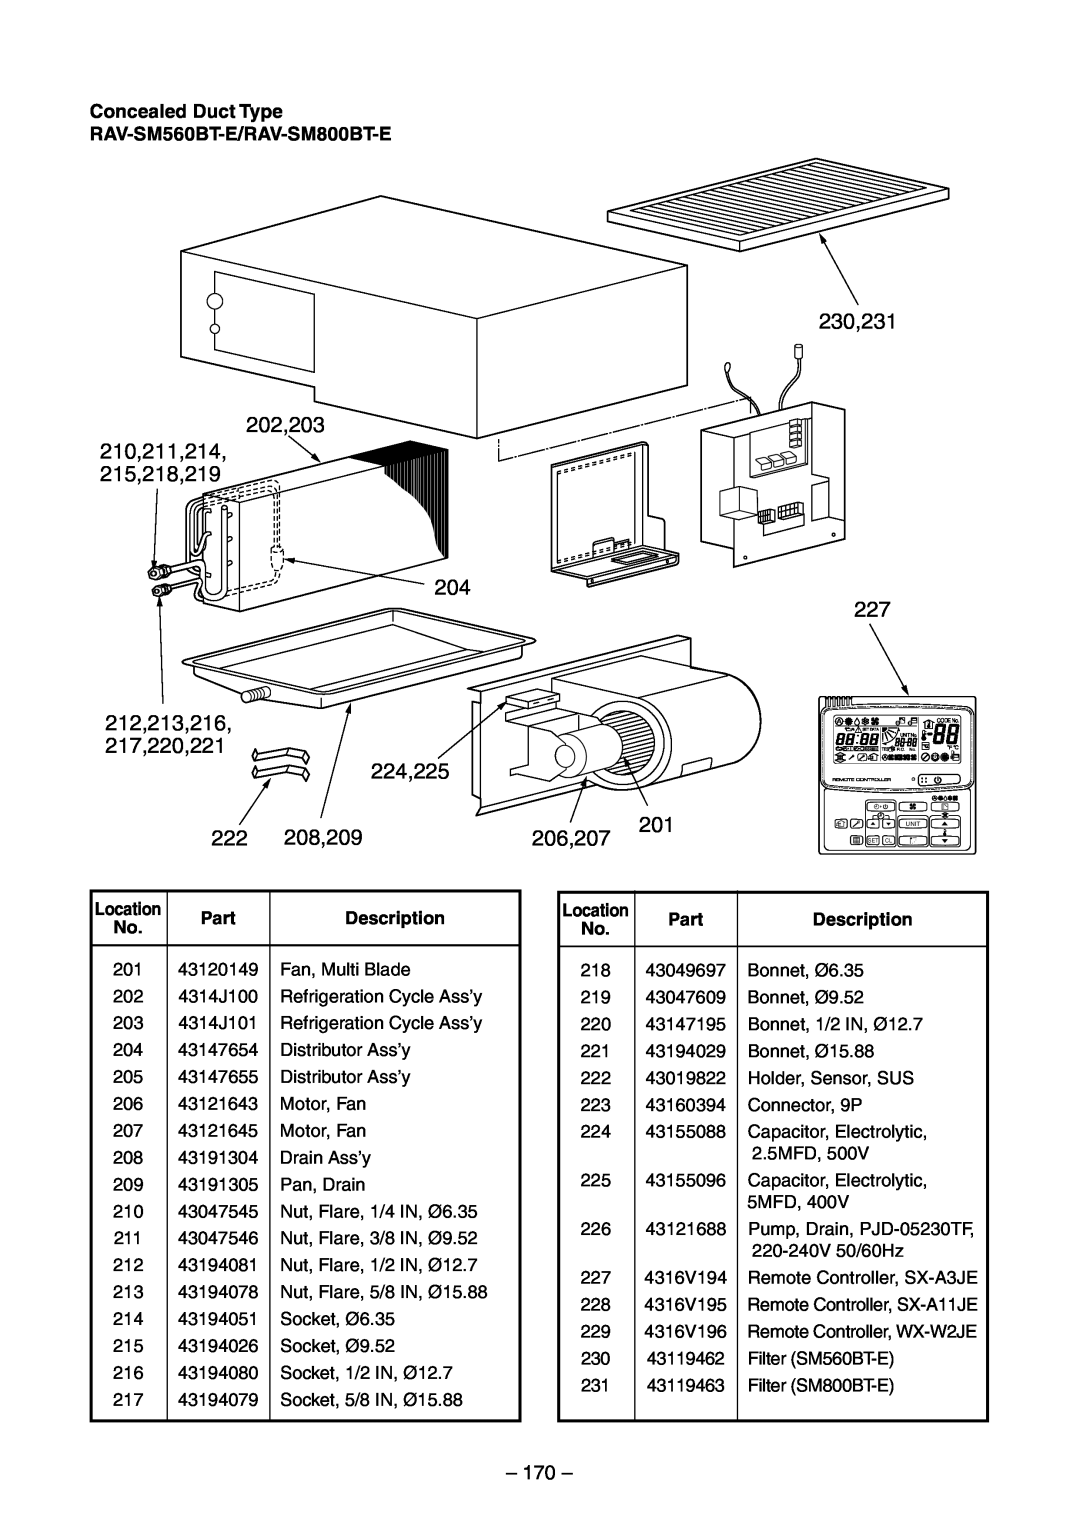 Toshiba RAV-SM560UT-E, RAV-SM800AT-E, RAV-SM800UT-E 170, Concealed Duct Type RAV-SM560BT-E/RAV-SM800BT-E, Part, Description 